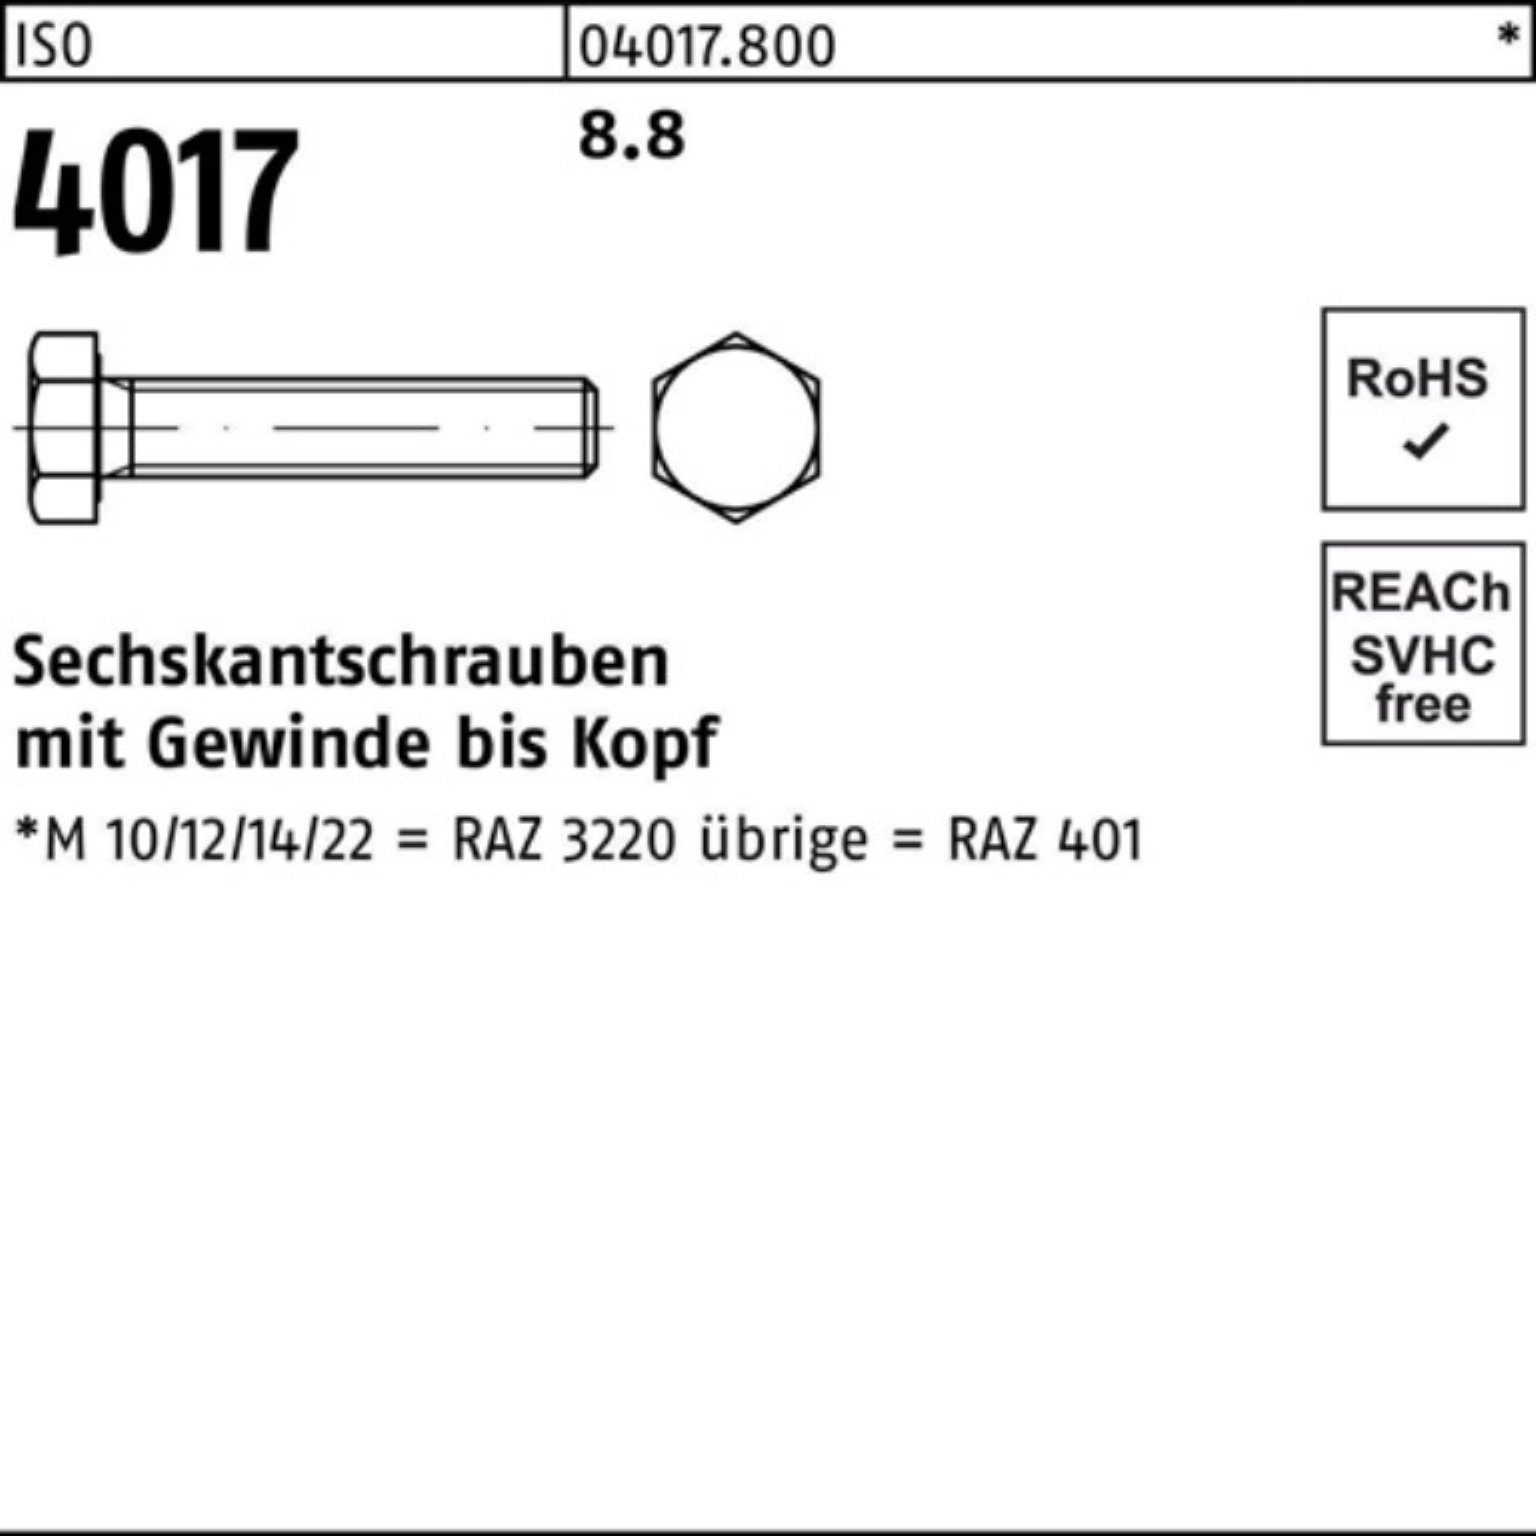 50 8.8 Bufab Sechskantschraube VG 100er Pack 40 M16x 401 4017 Stück ISO ISO Sechskantschraube